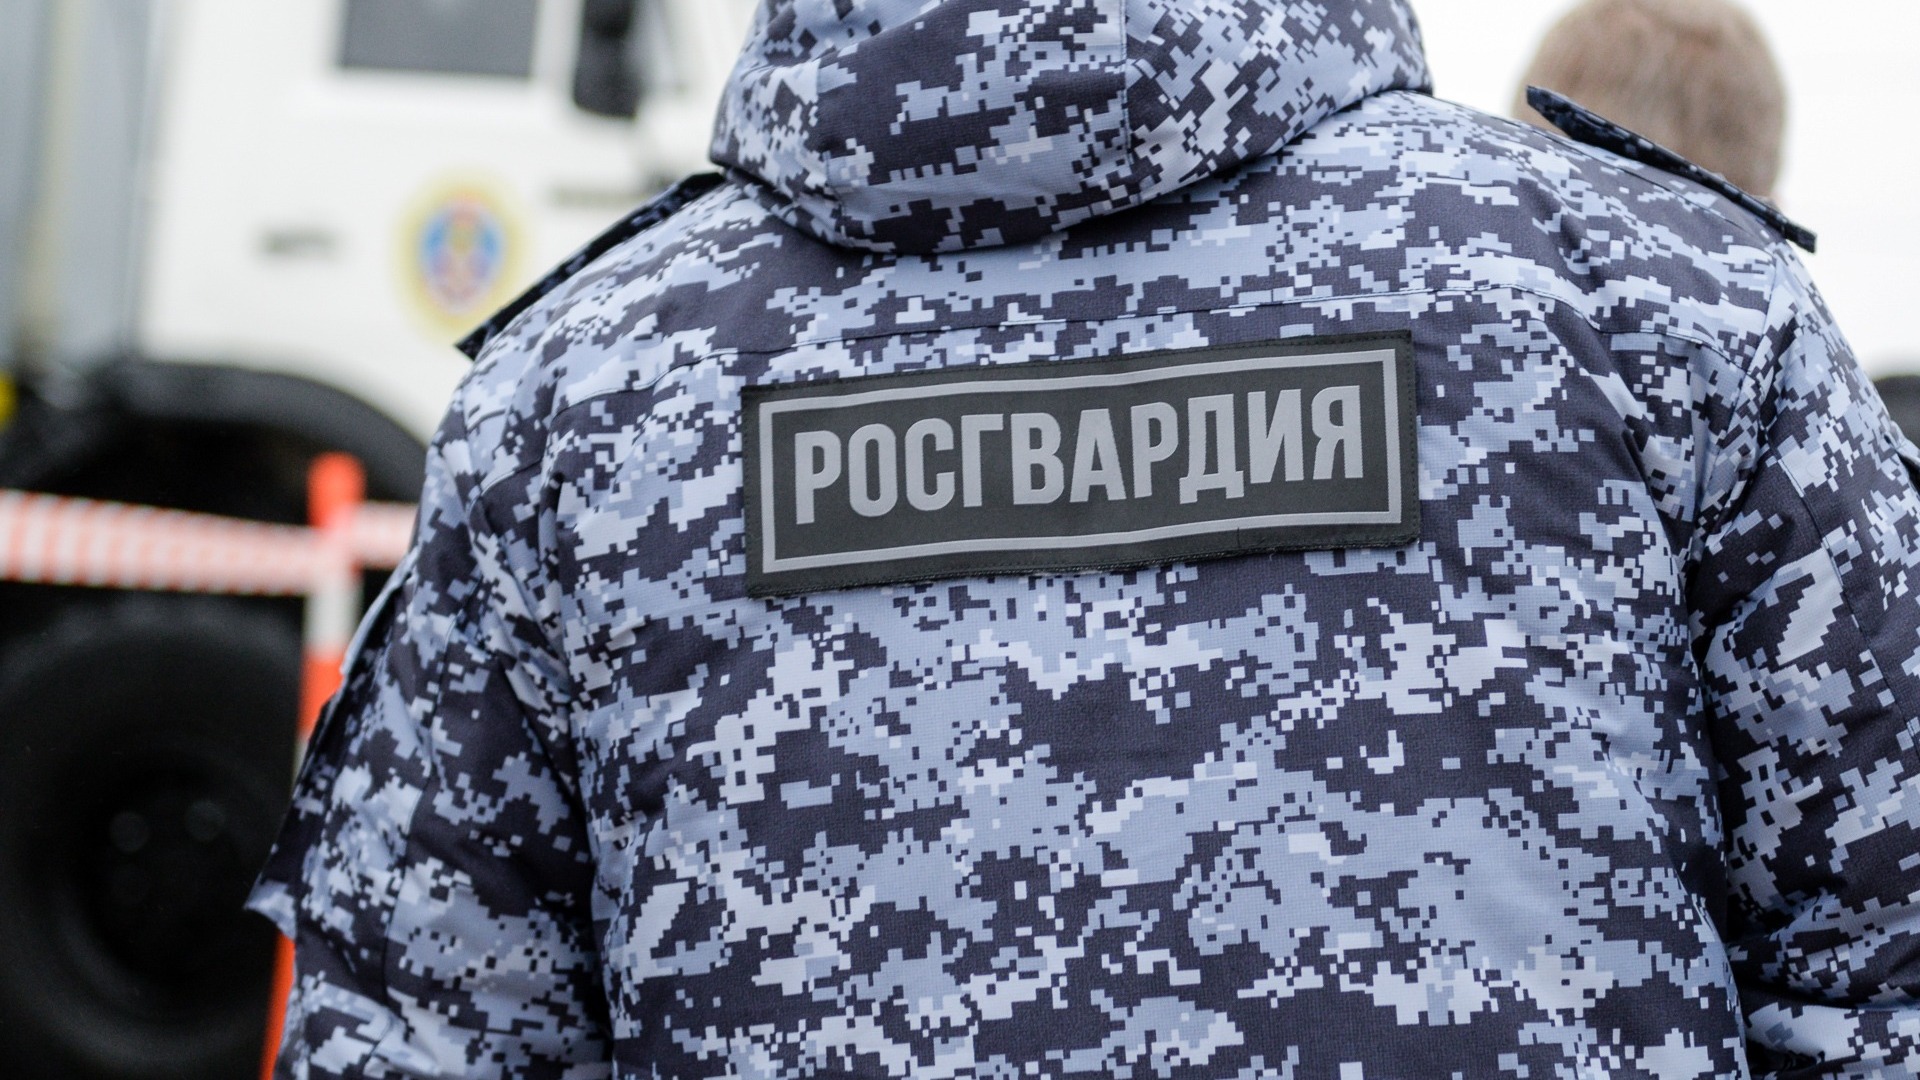 В Ростове суд утвердил приговор экс-полковнику Росгвардии за дискредитацию армии РФ